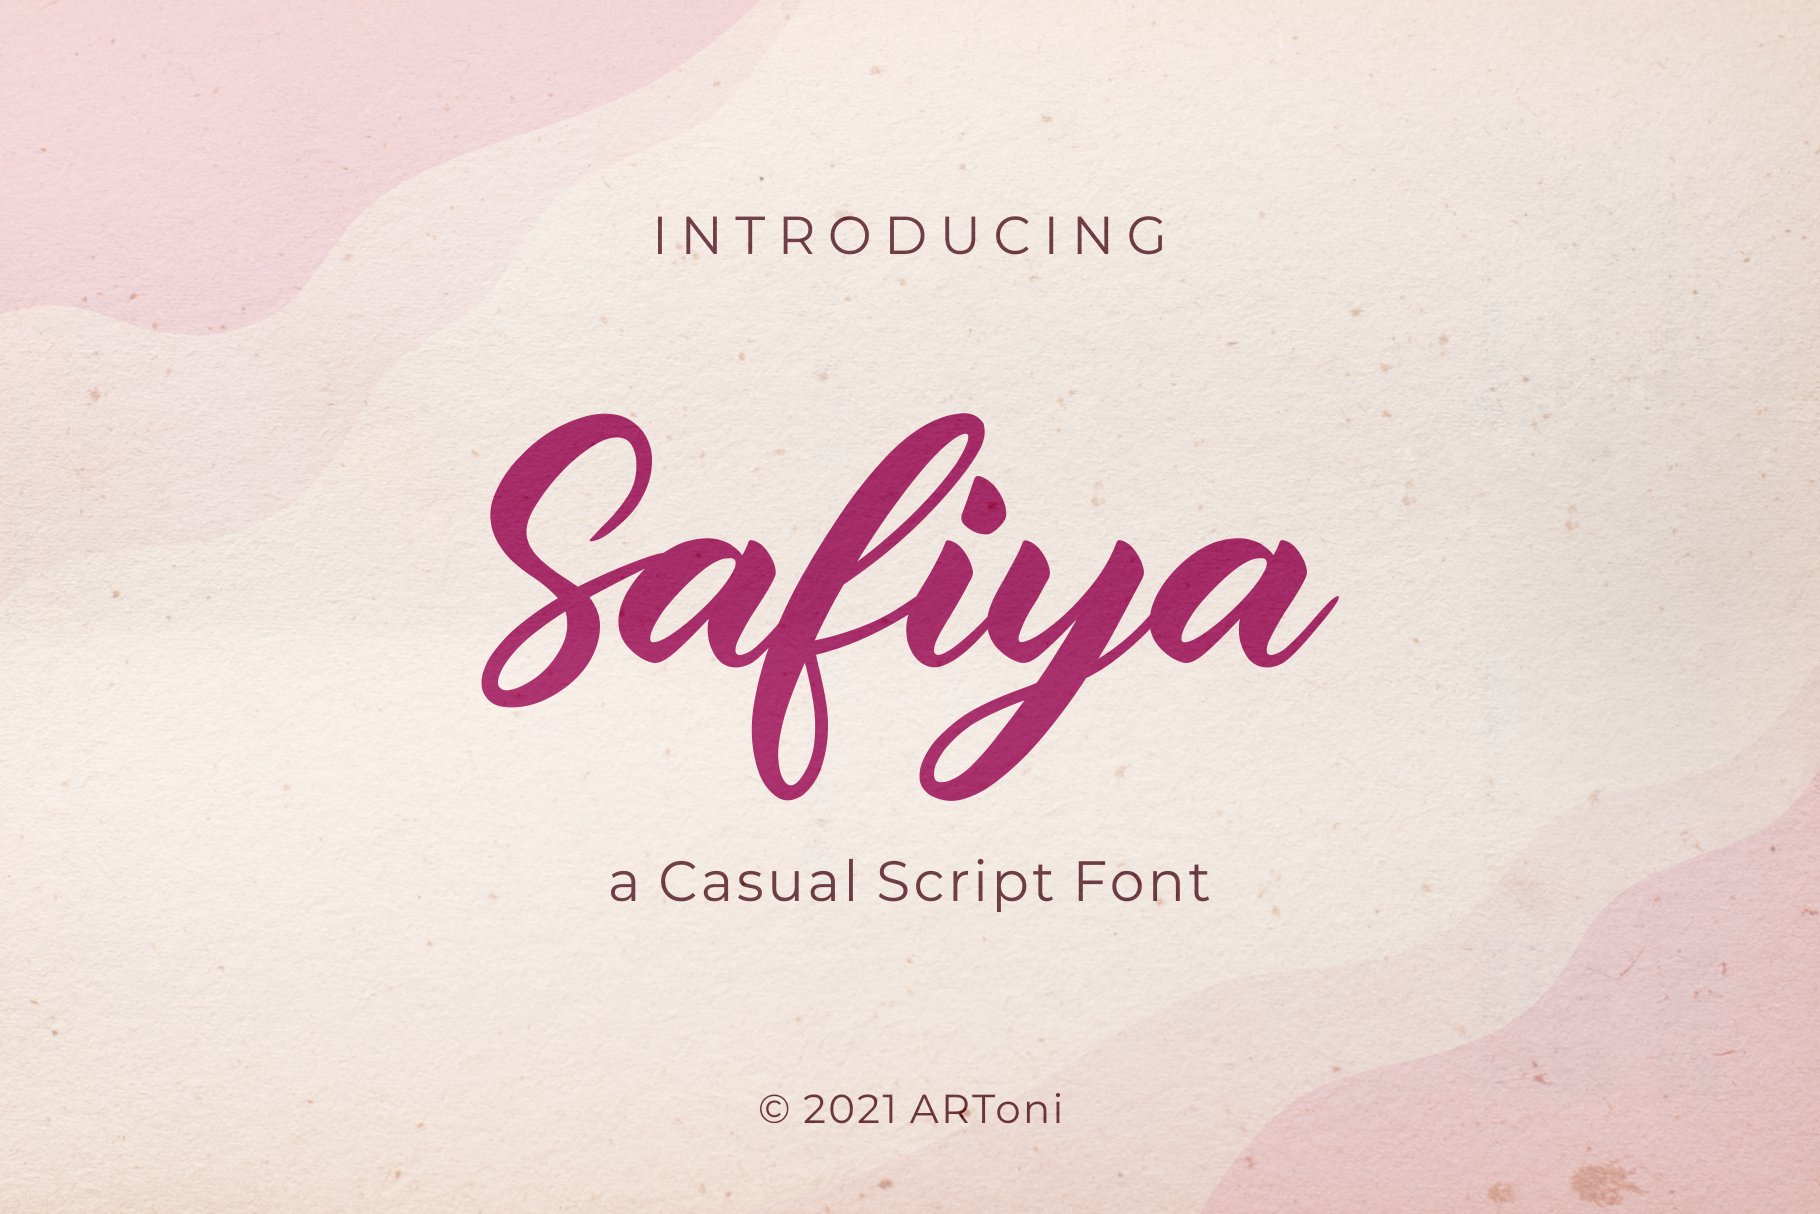 Safiya cover image.